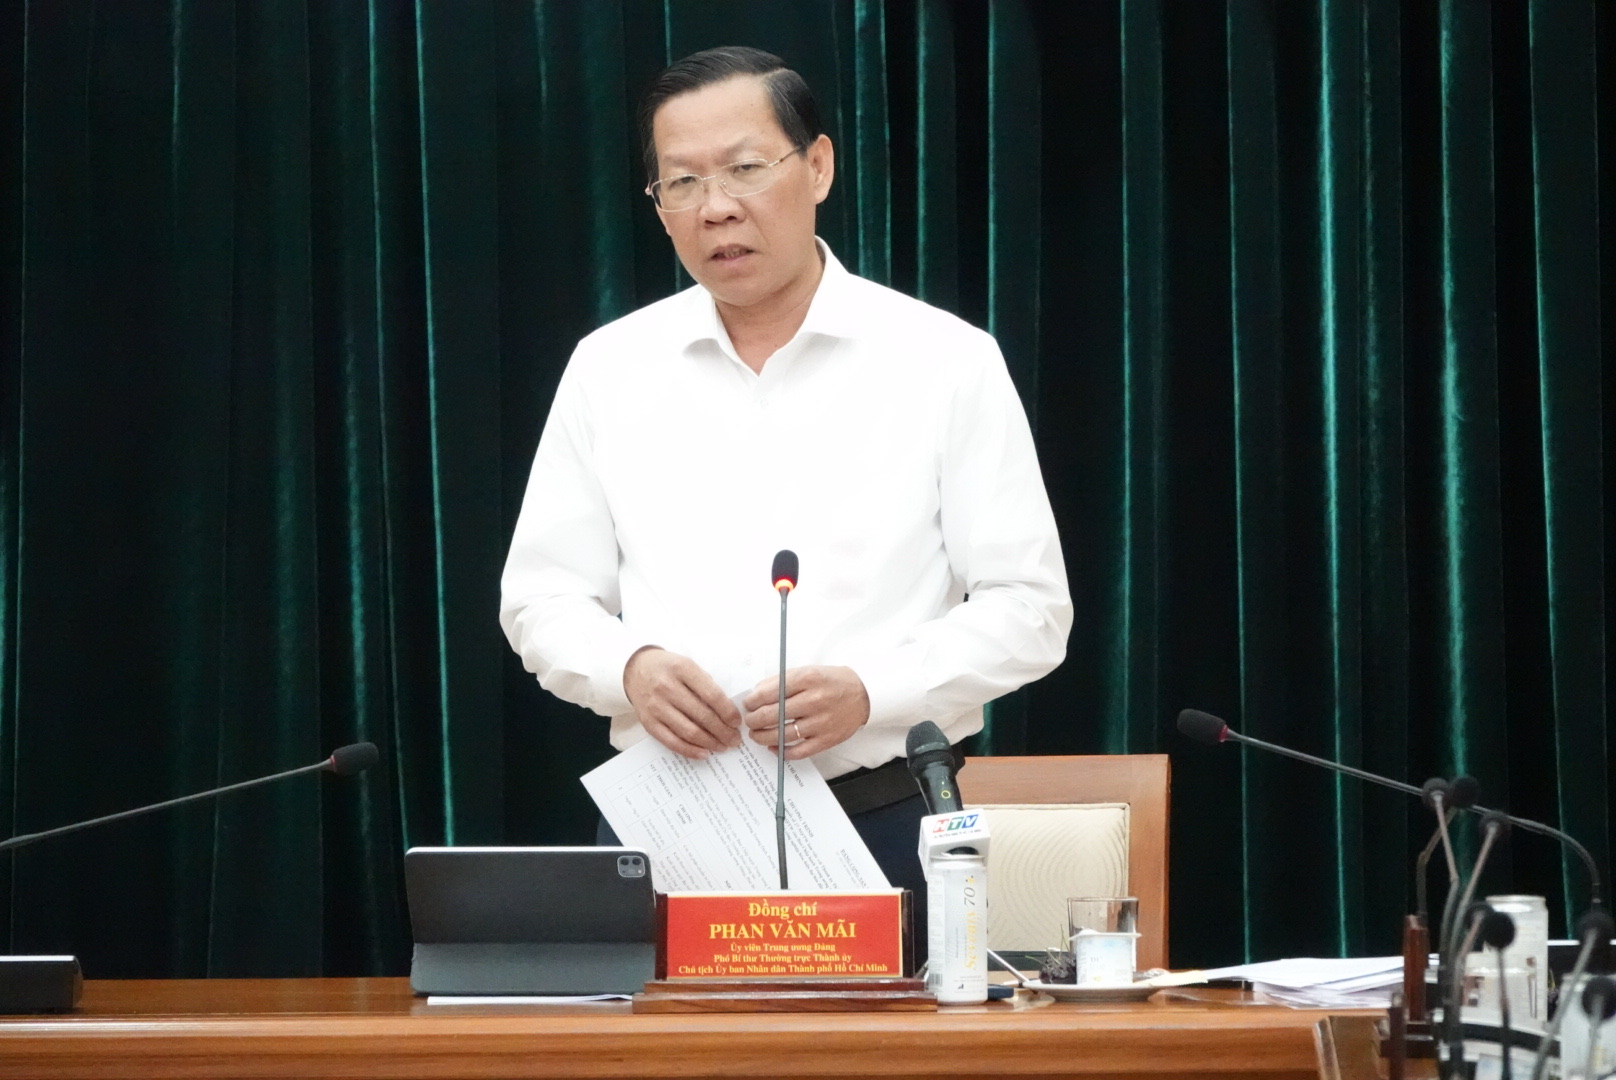 Chủ tịch UBND TPHCM Phan Văn Mãi đánh giá cao sự đóng góp của đội ngũ trí thức vào phát triển chung